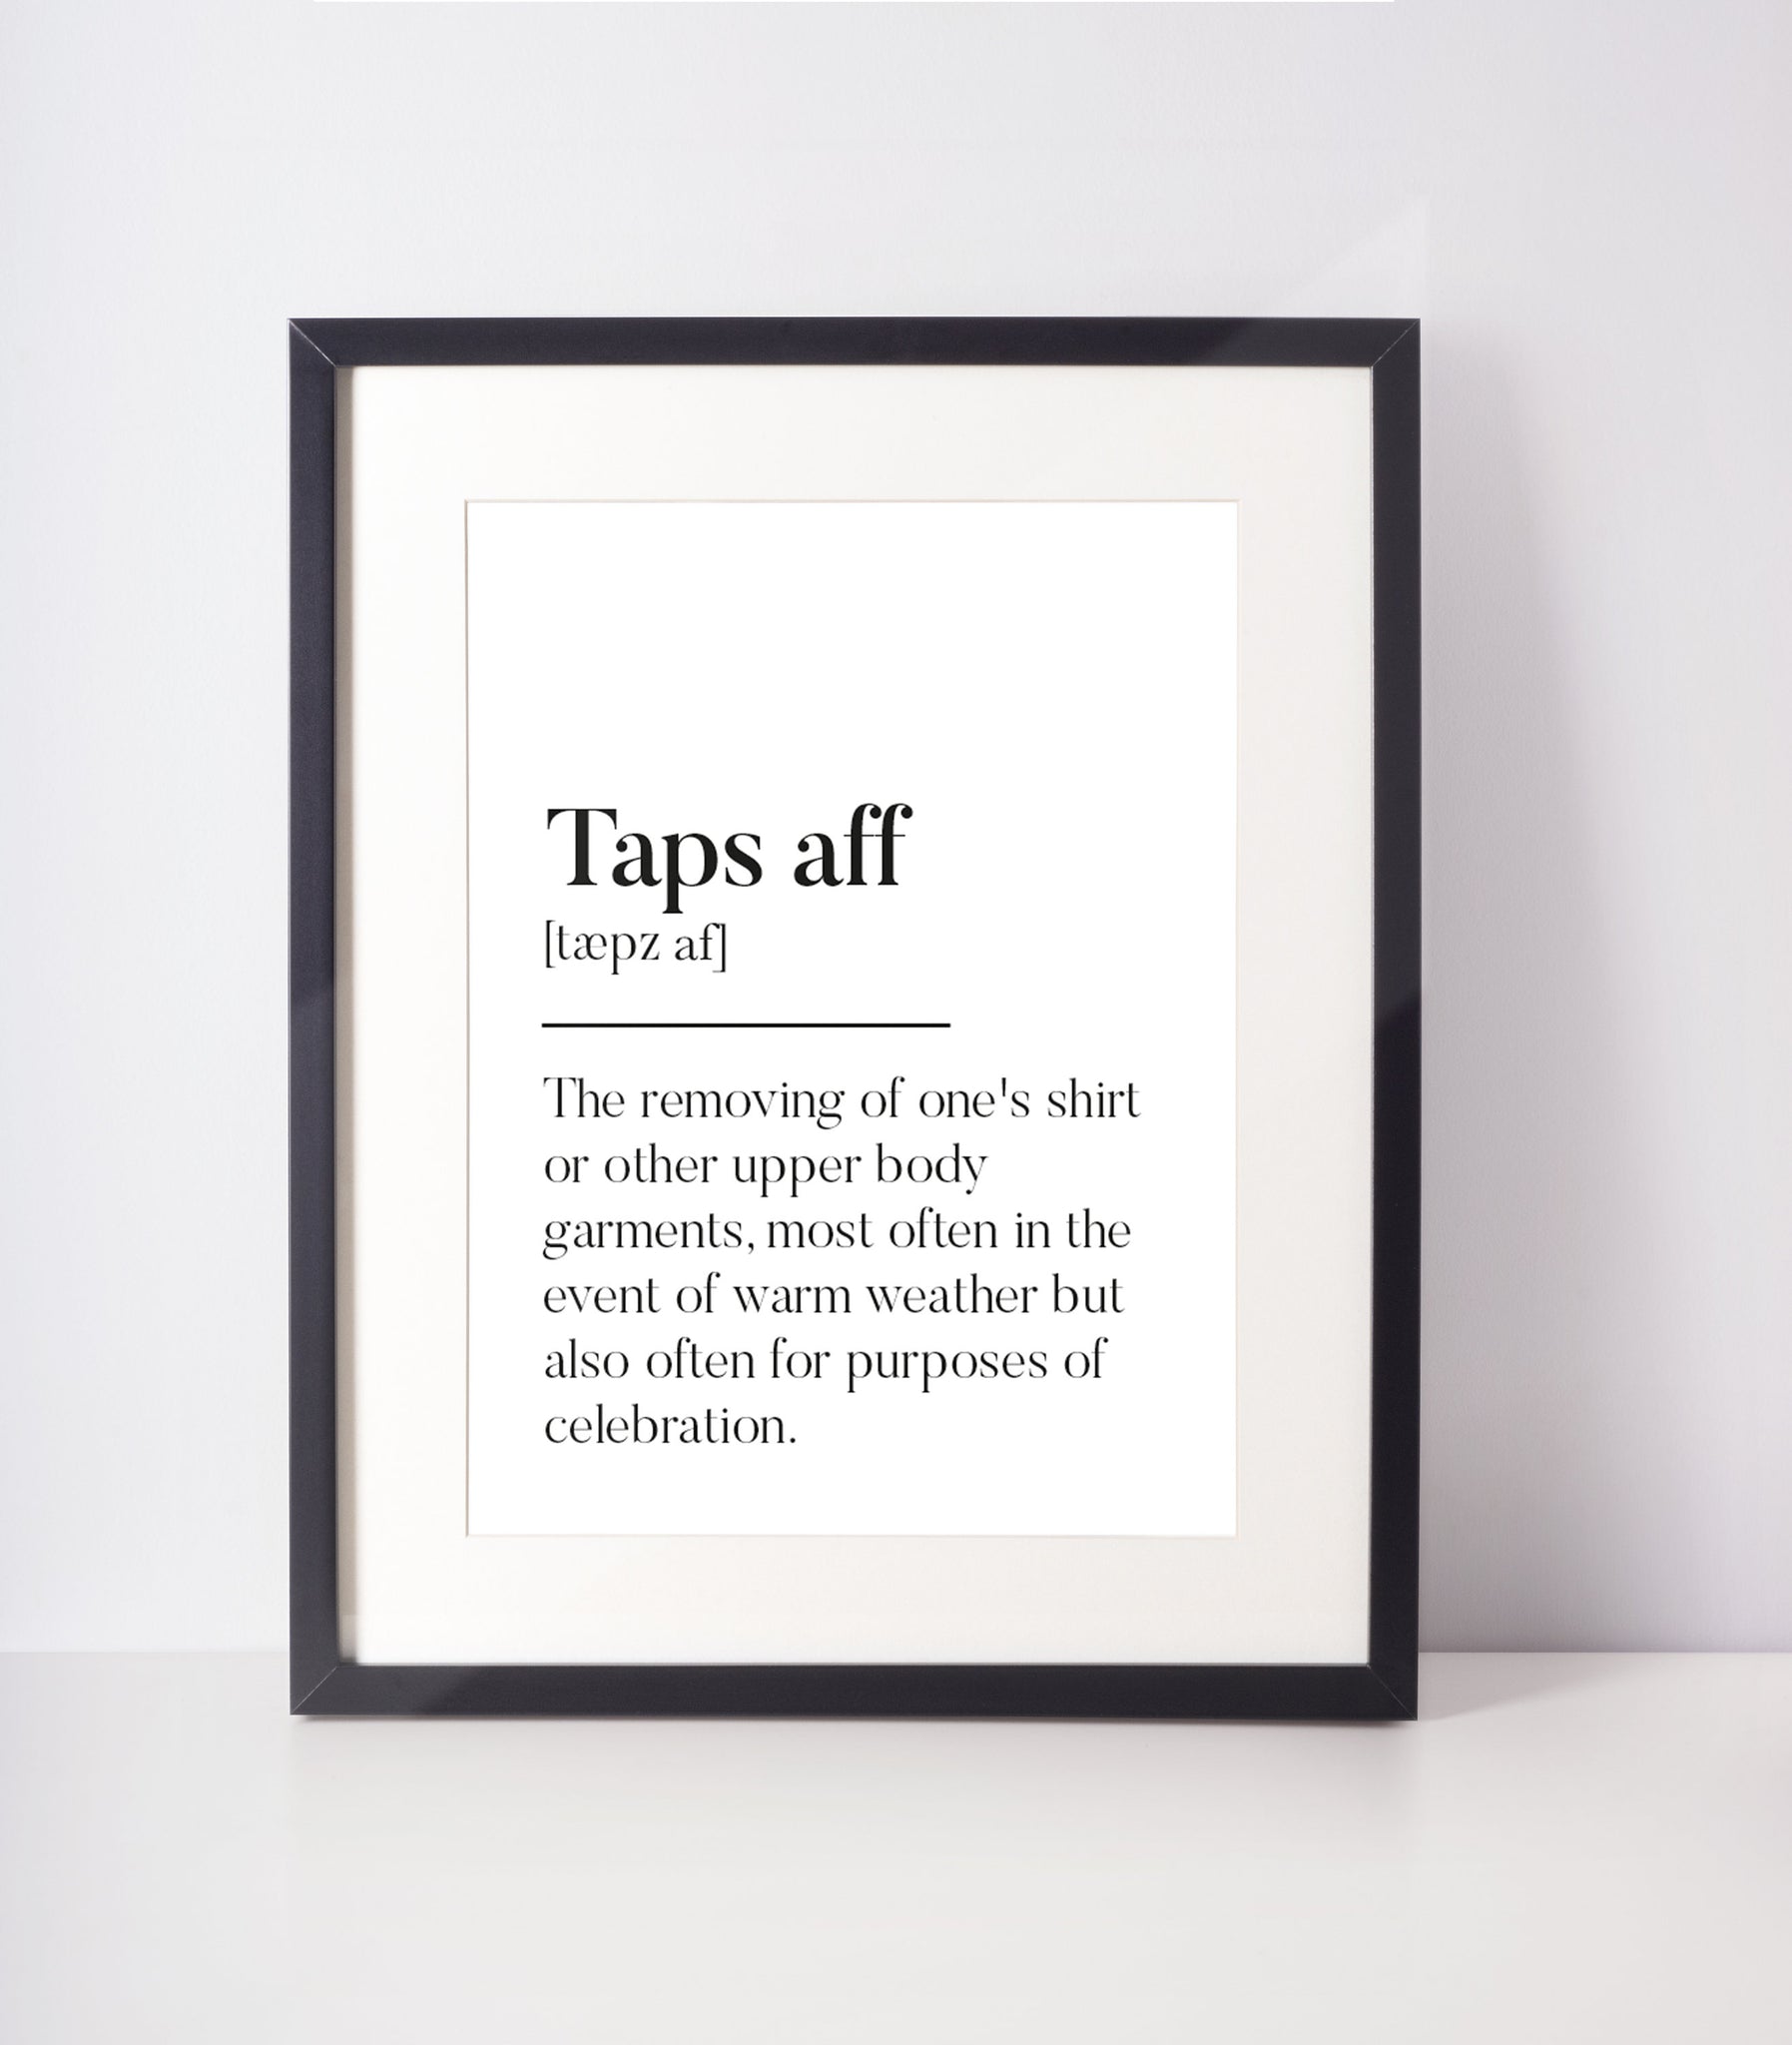 Taps affs Scottish Slang Definition Unframed Print